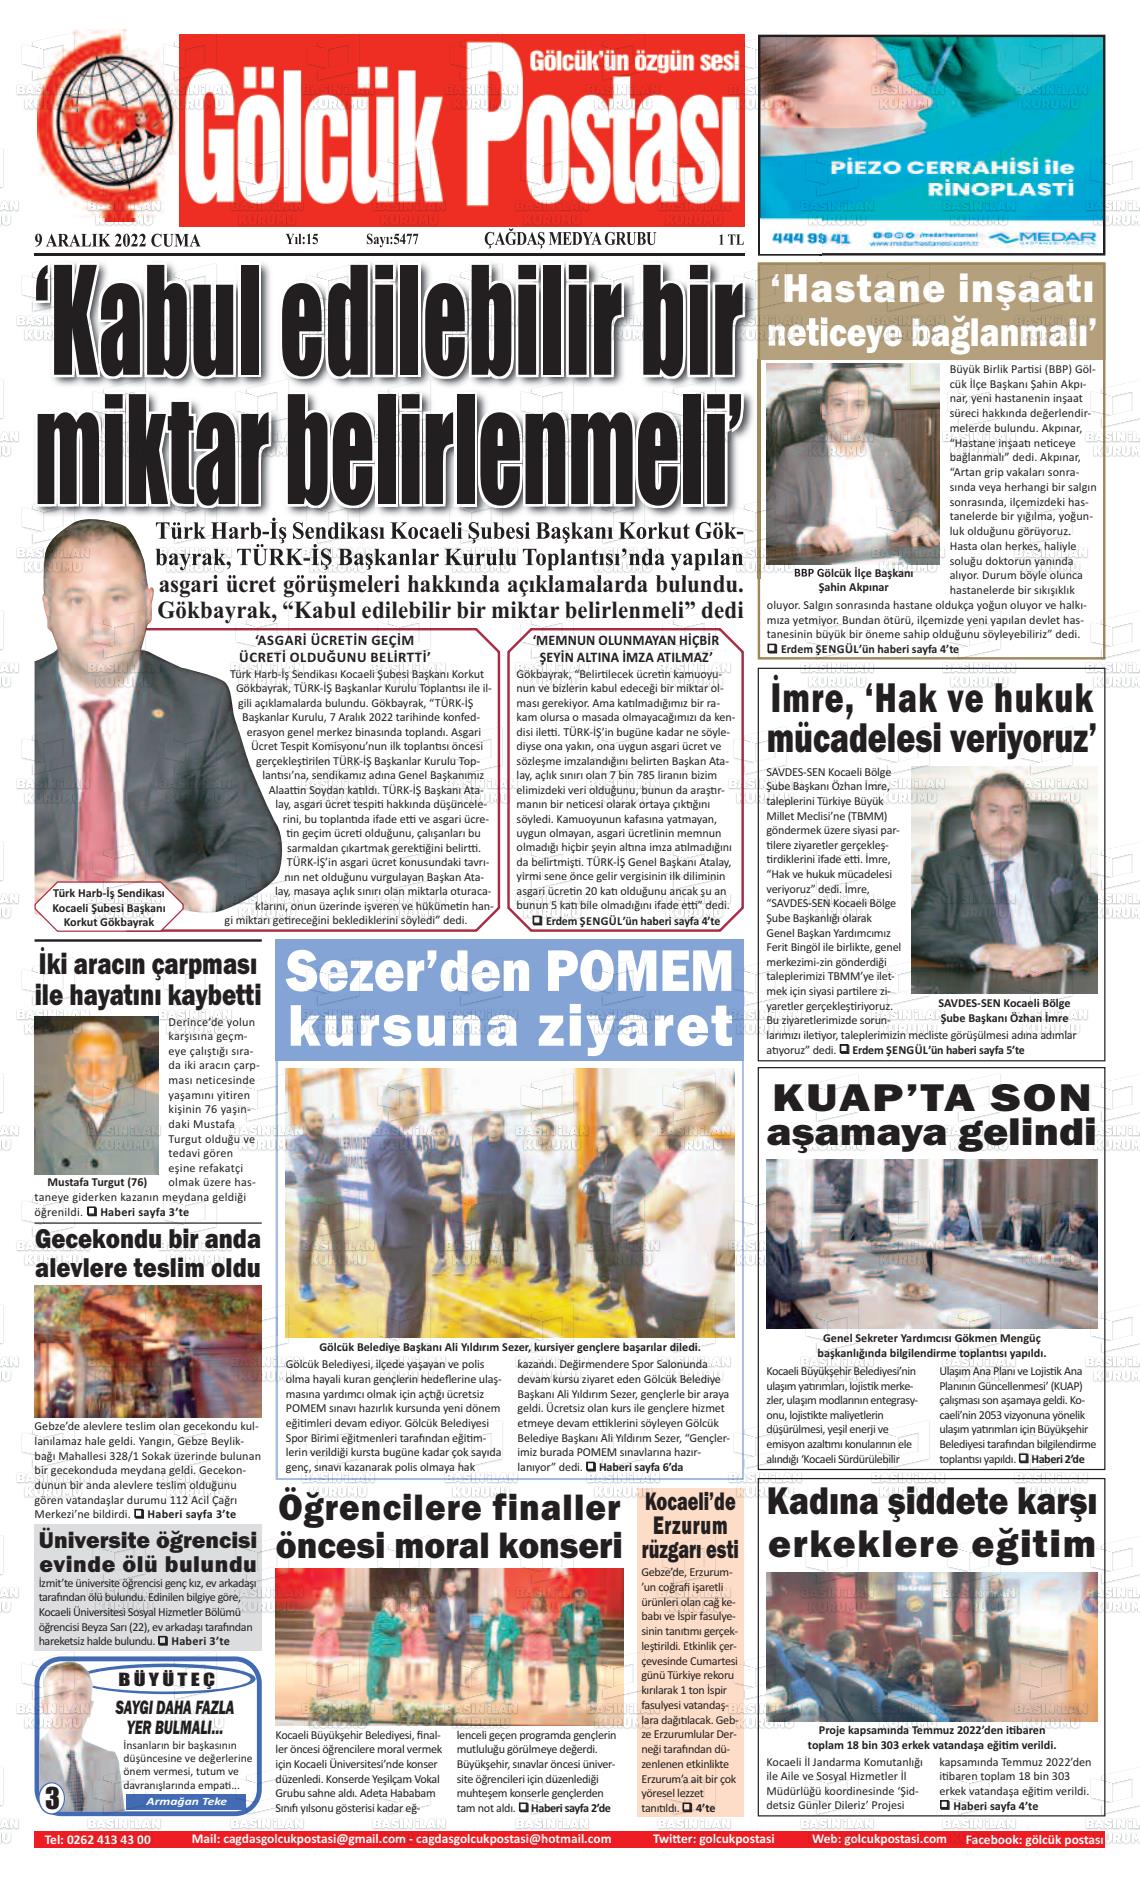 09 Aralık 2022 Gölcük Postasi Gazete Manşeti